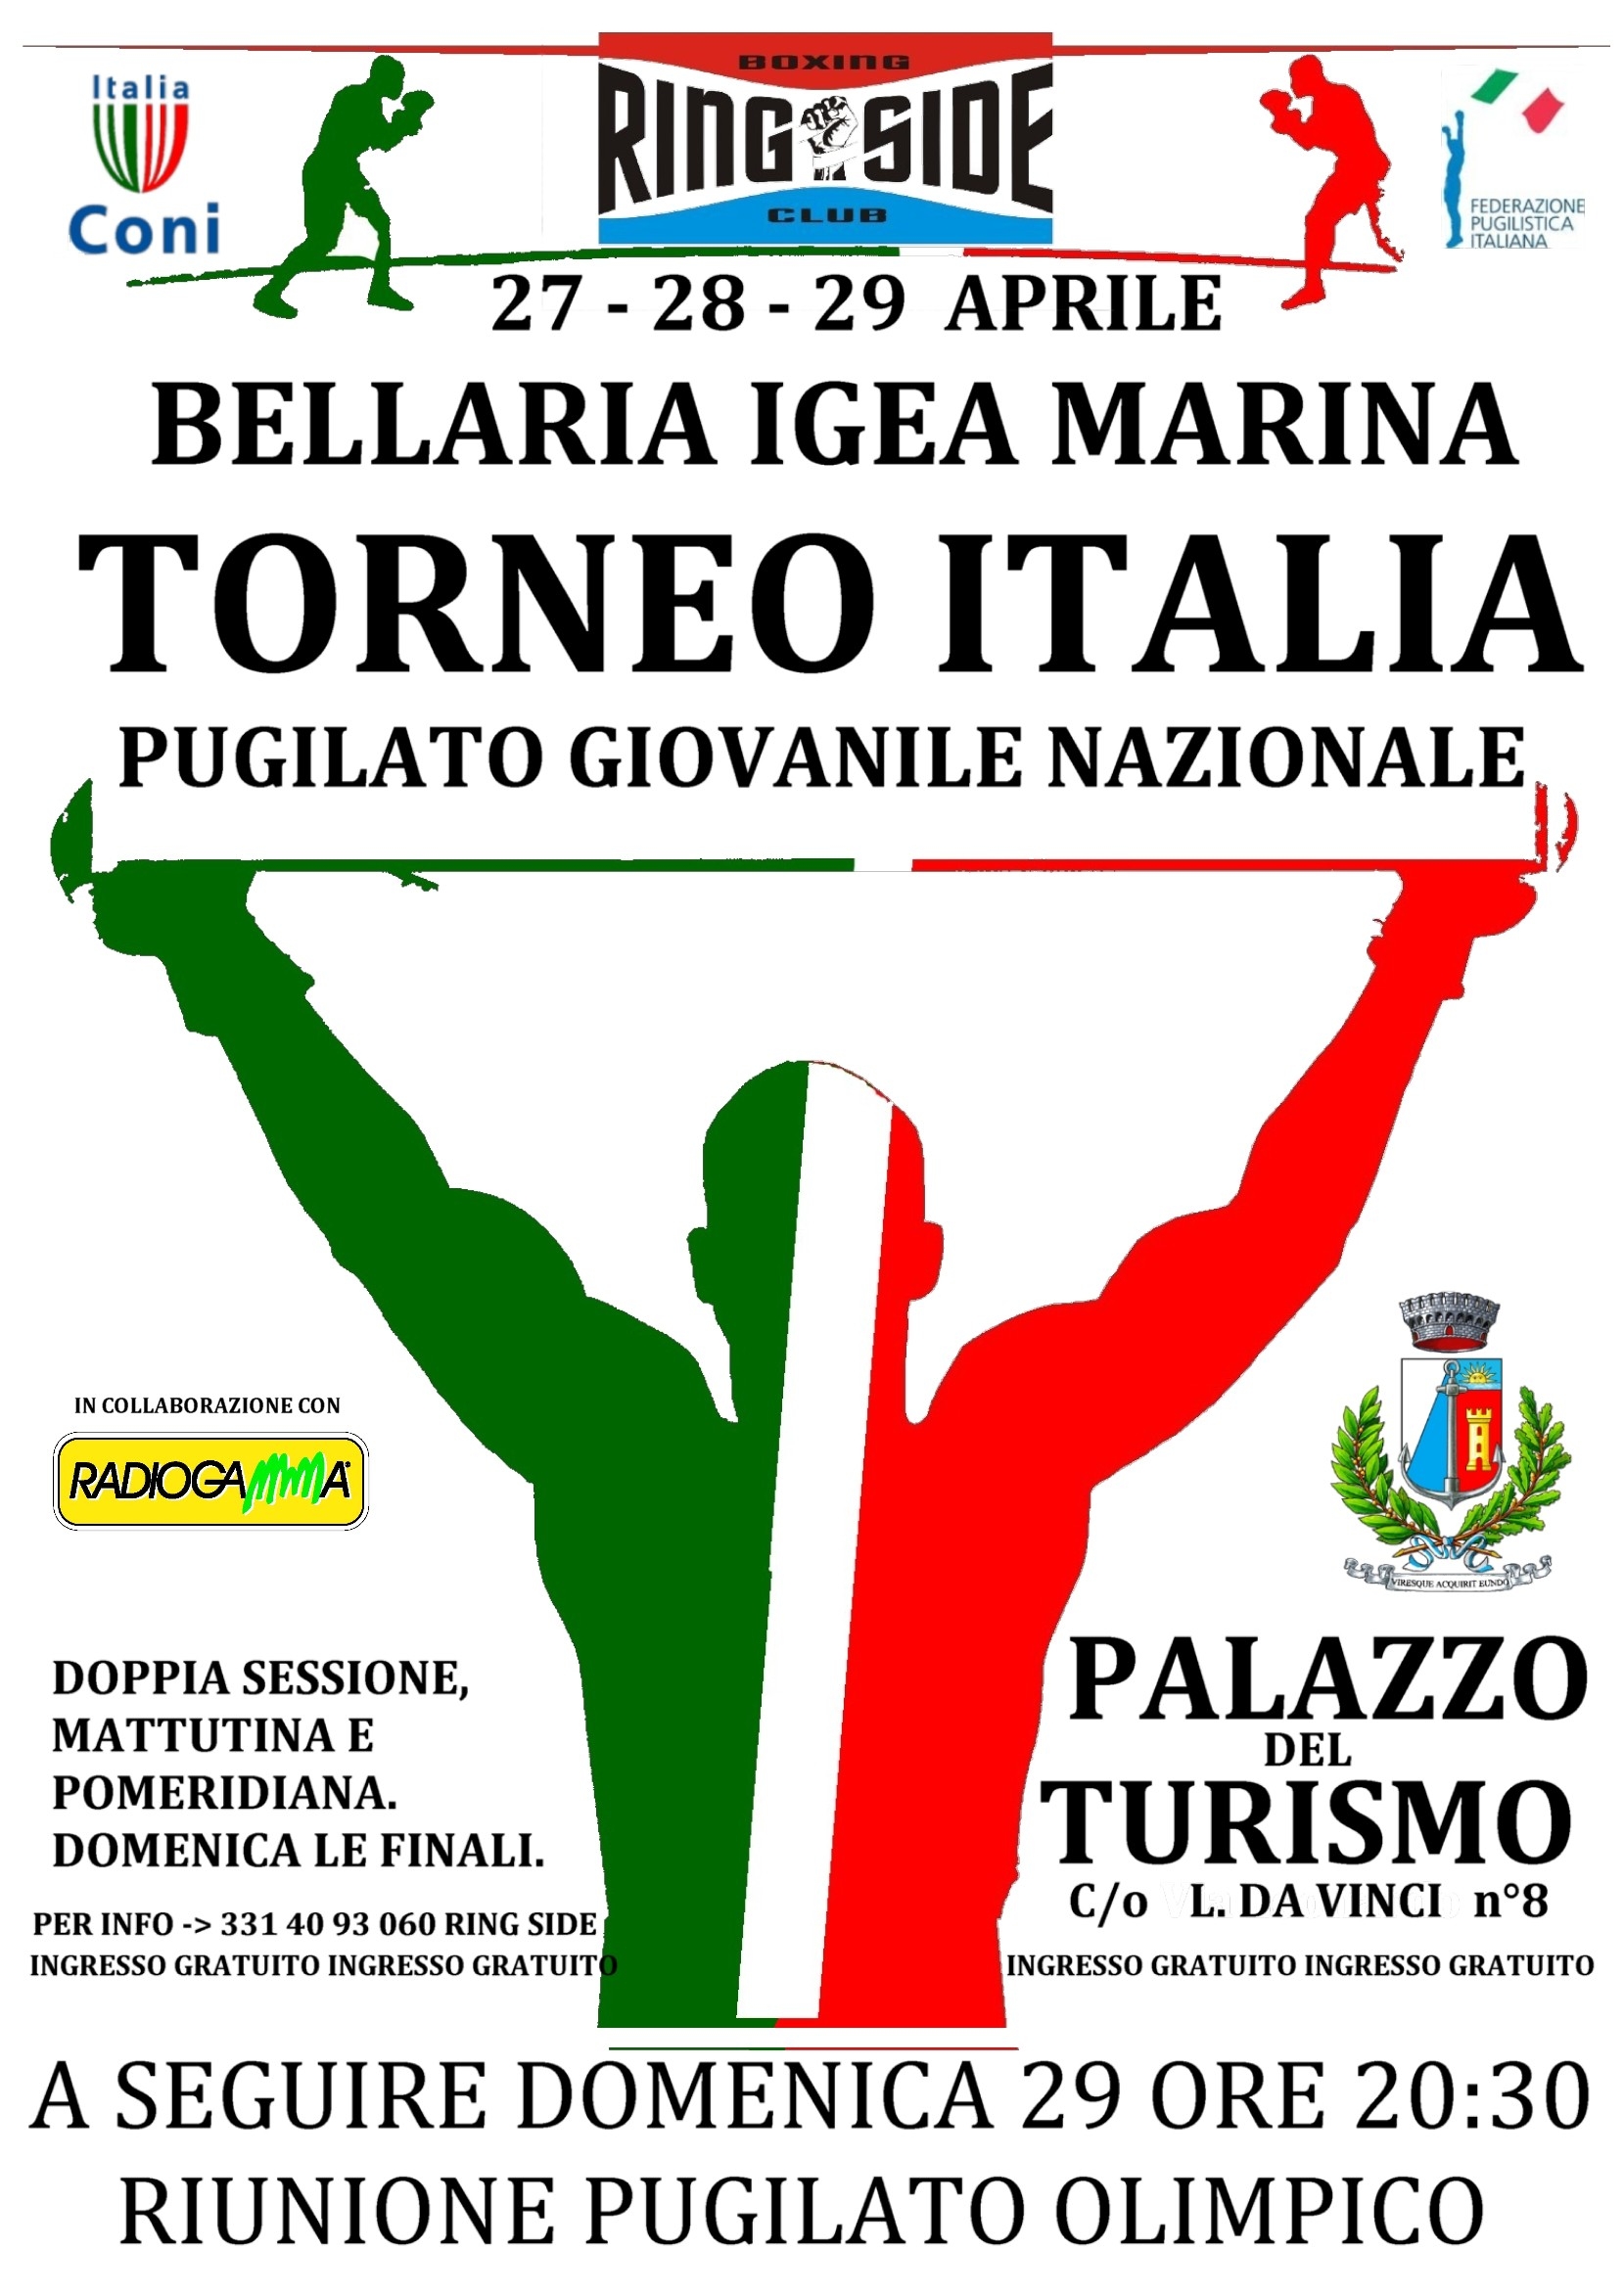 Torneo Italia: dal 27 al 29 Aprile la boxe giovanile si ritrova a Bellaria Igea Marina